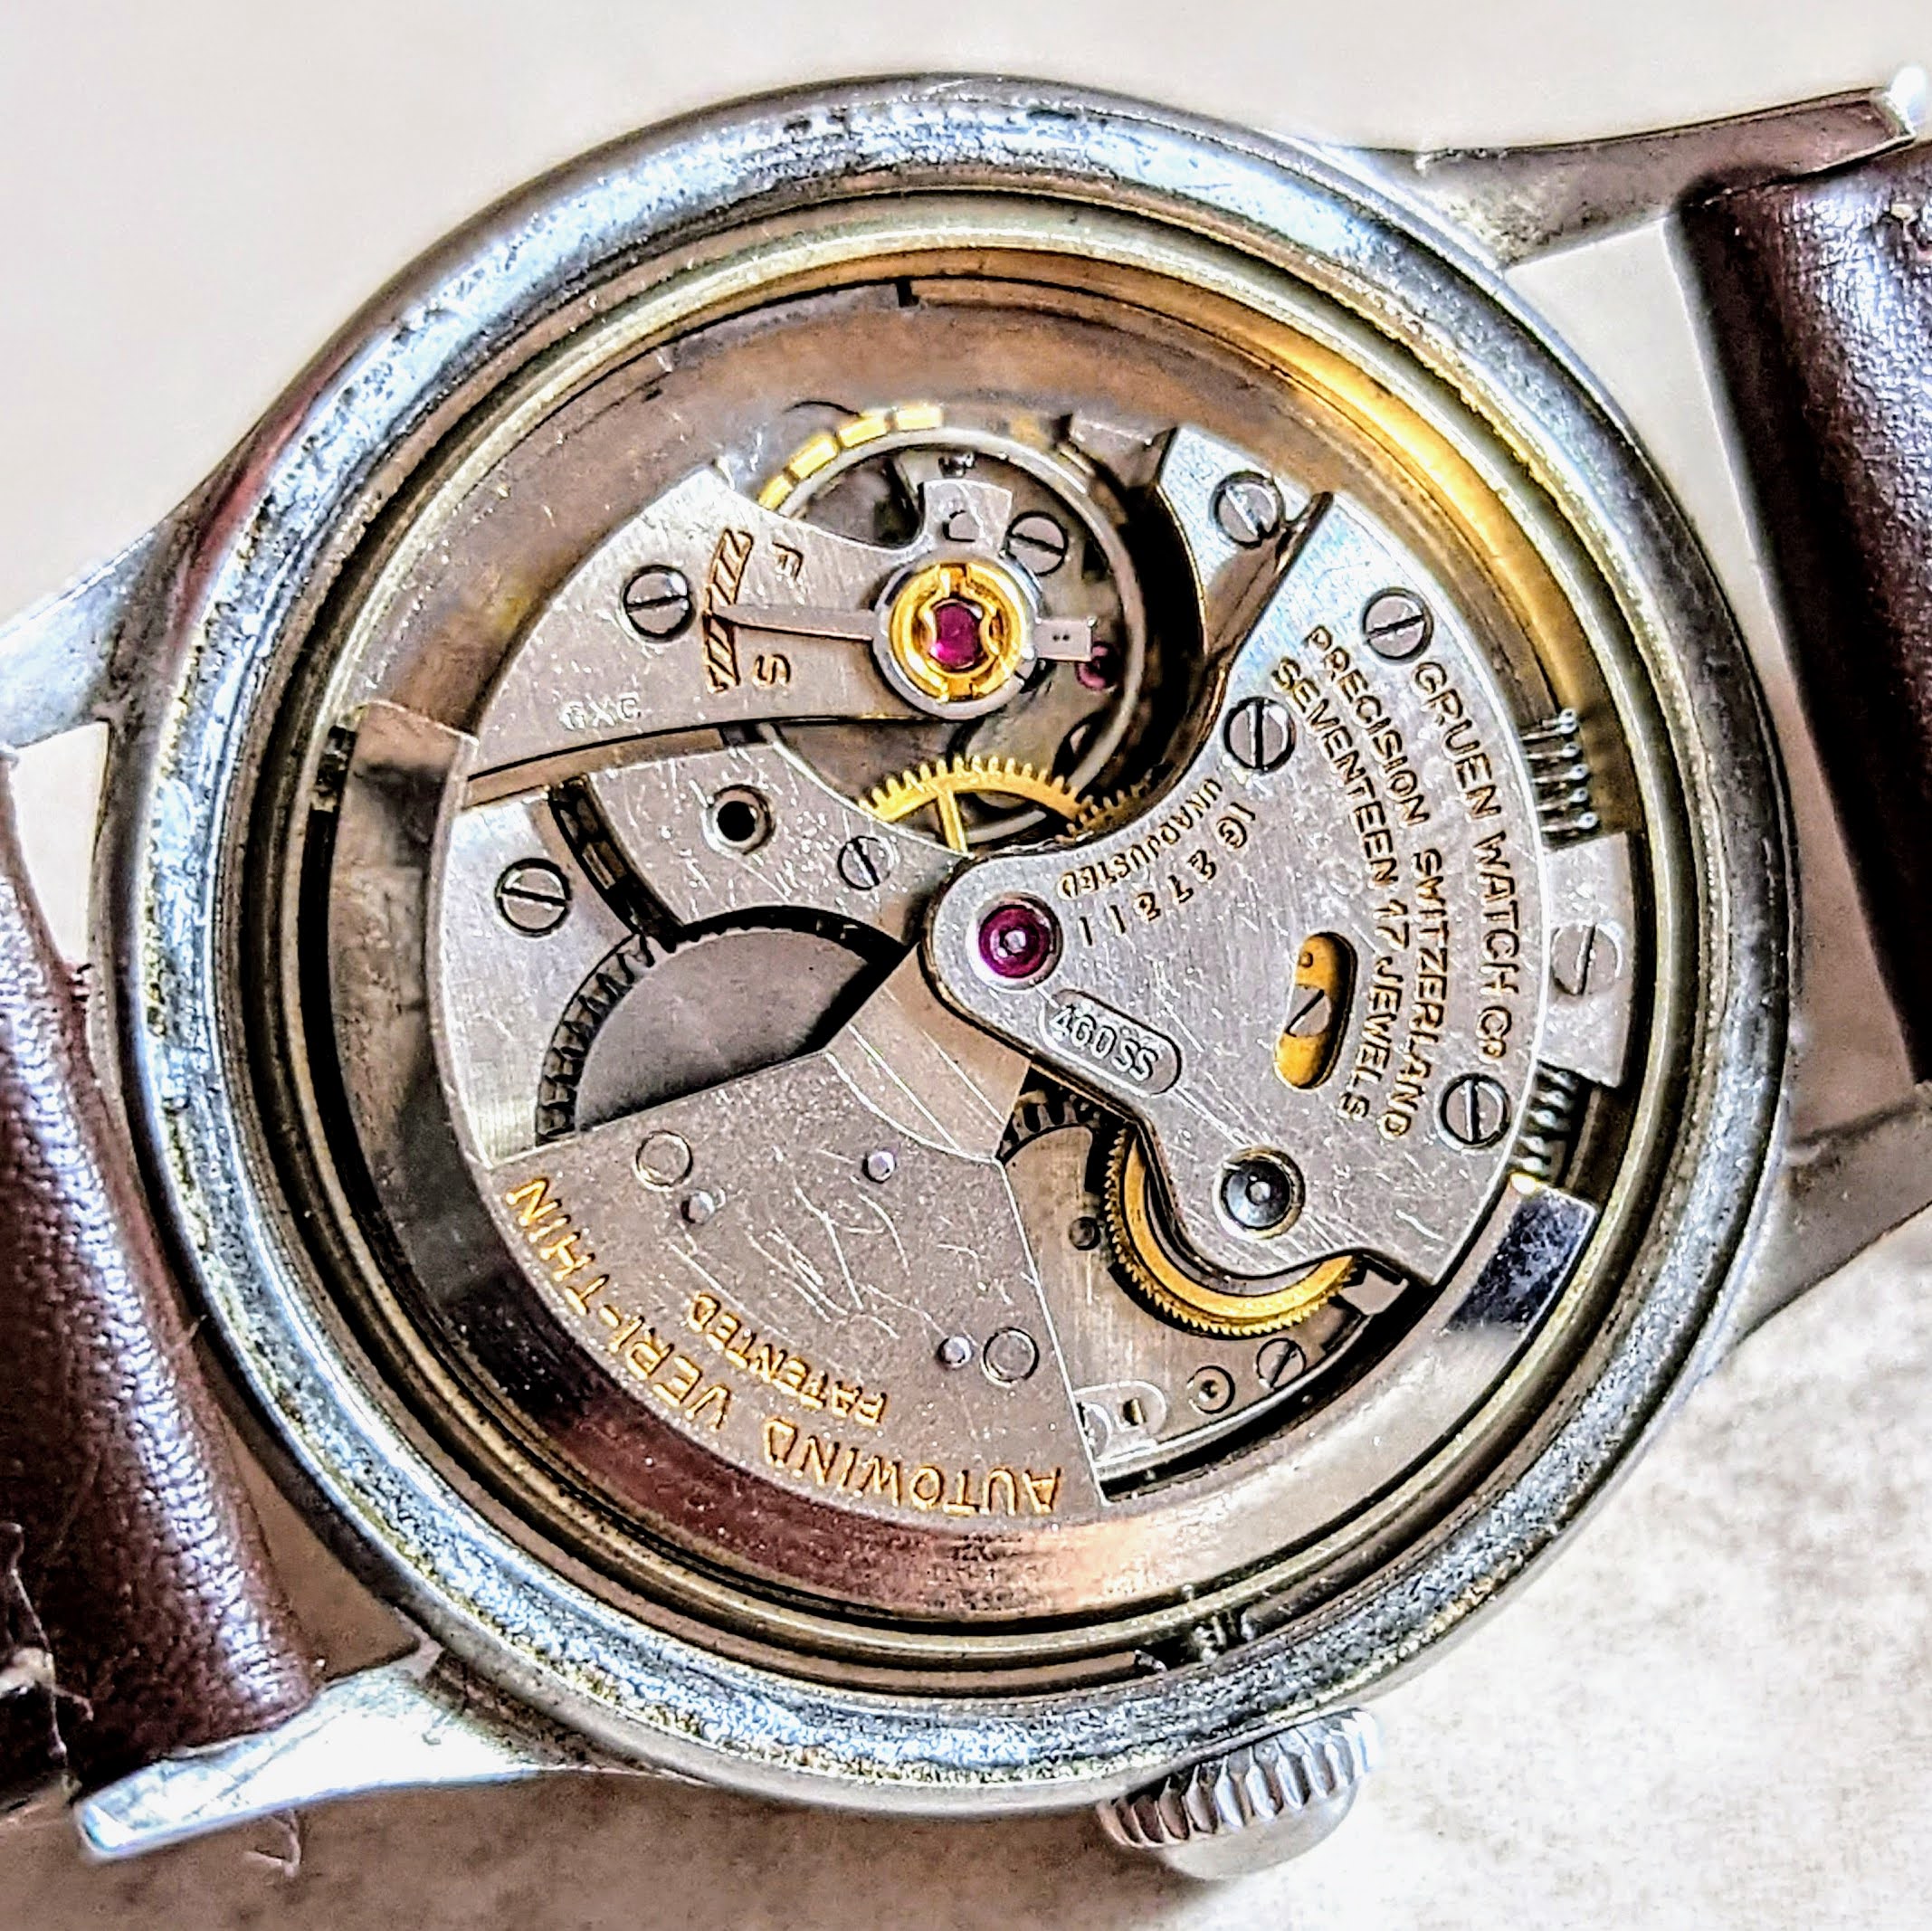 1947 GRUEN Precision Autowind Watch Bumper Vintage Wristwatch